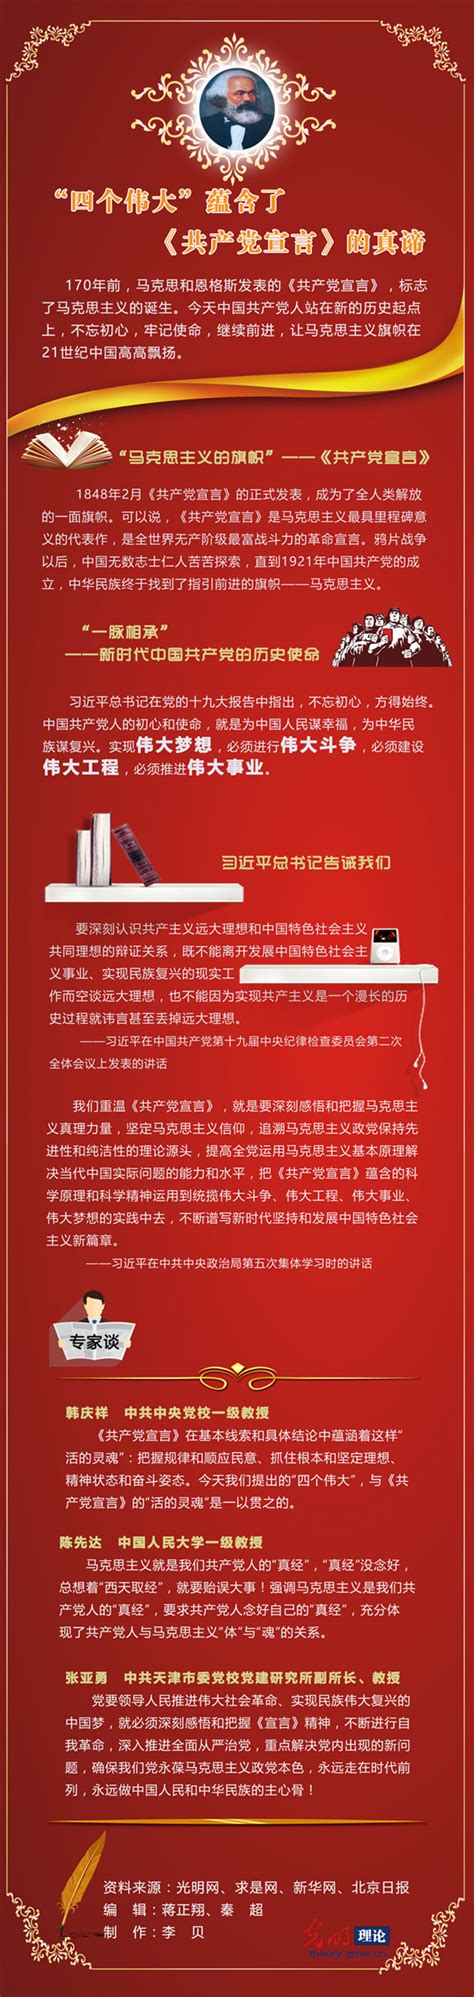 重要提醒！中国共产党成立100周年庆祝活动标识使用时要注意......_新华报业网